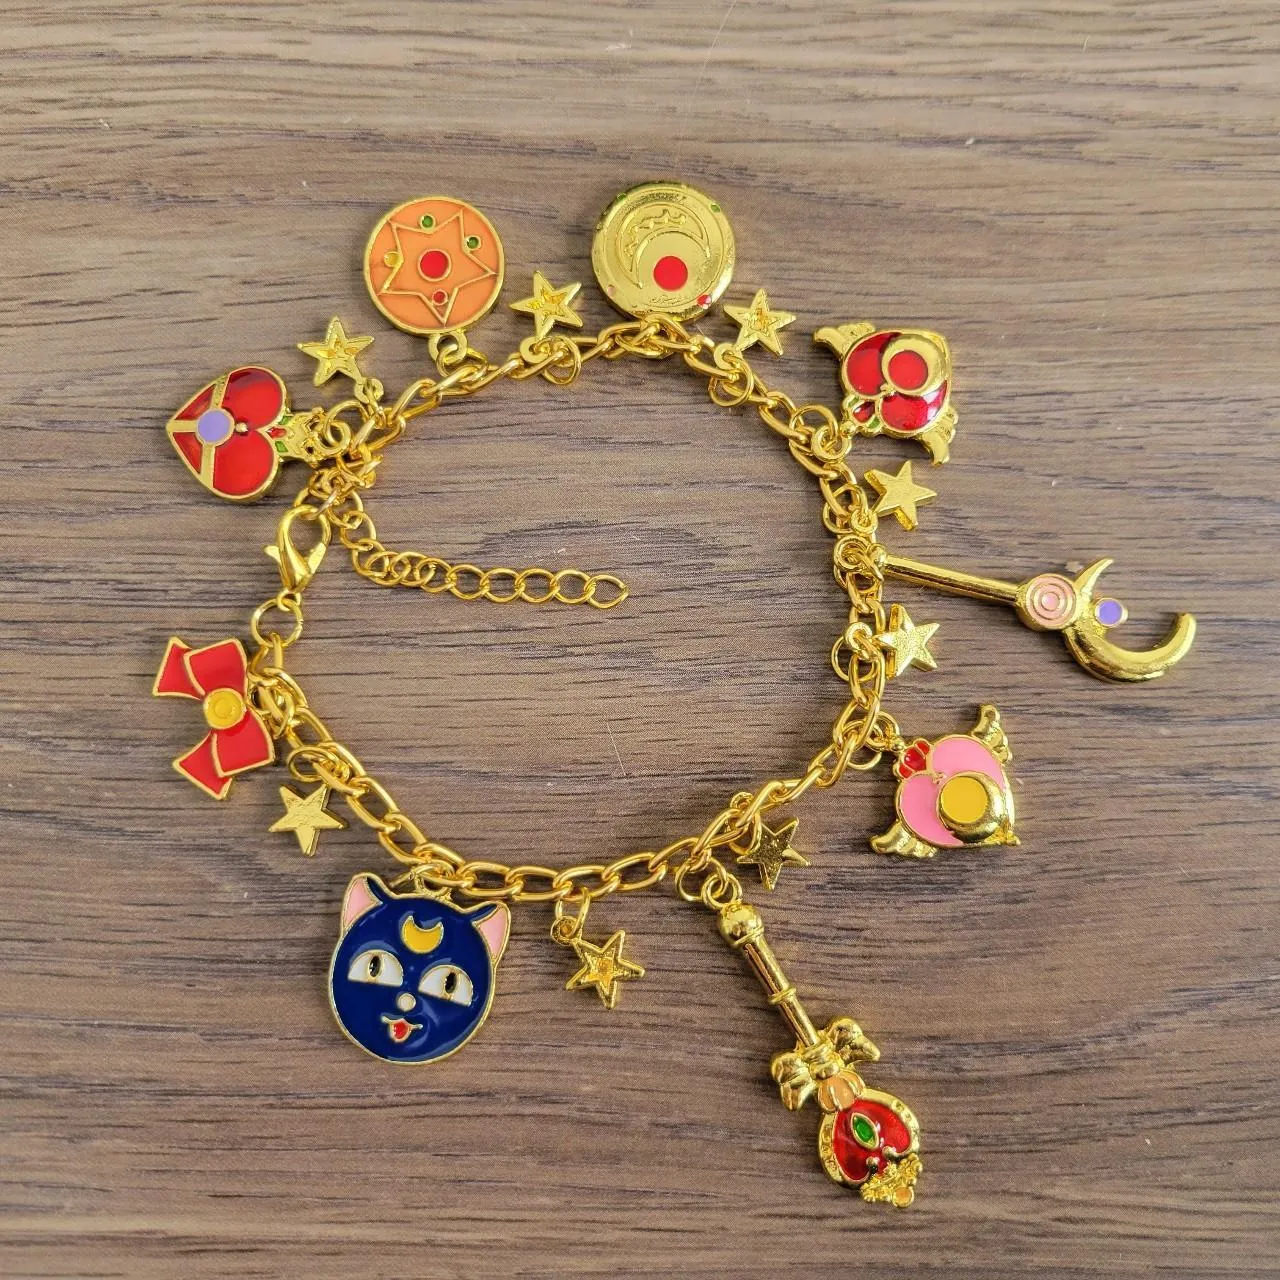 Sailor moon inspired bracelet  photo 1